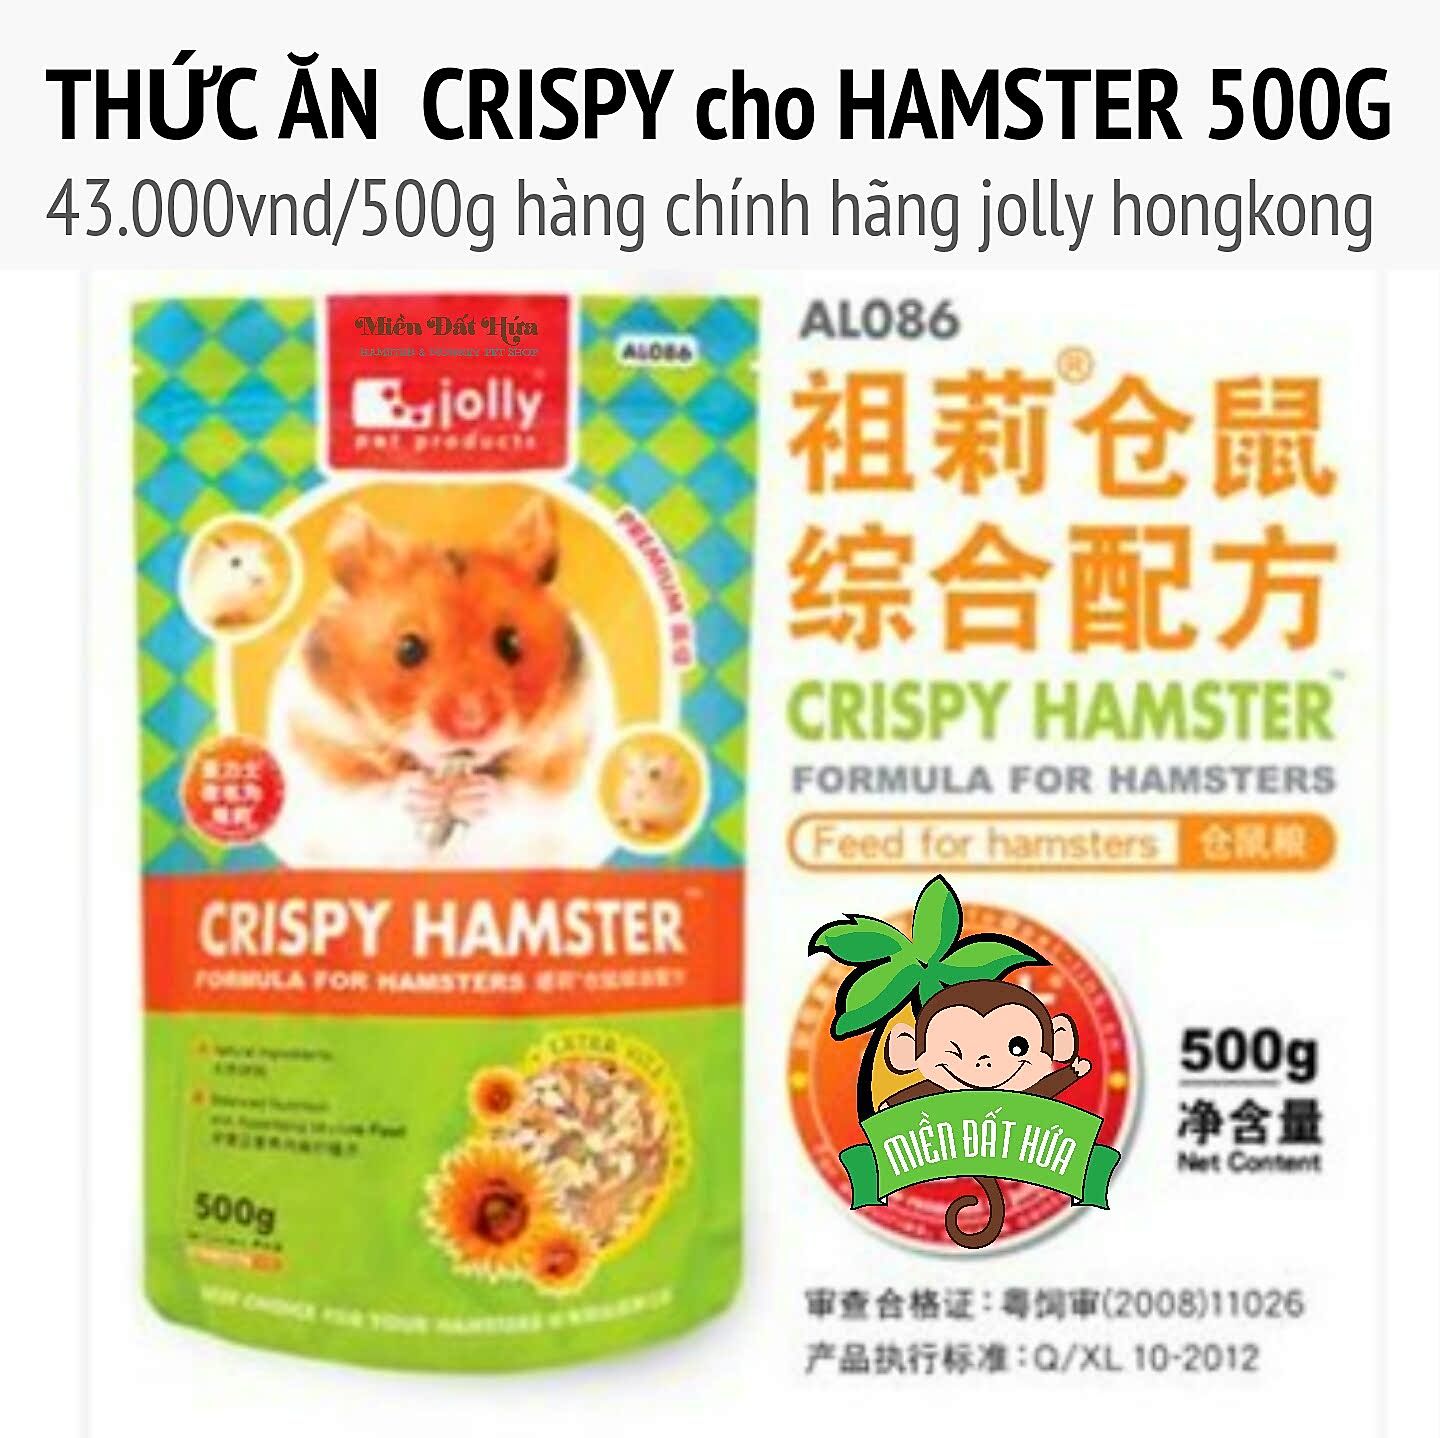 Thức ăn crispy cho hamster 500g jolly